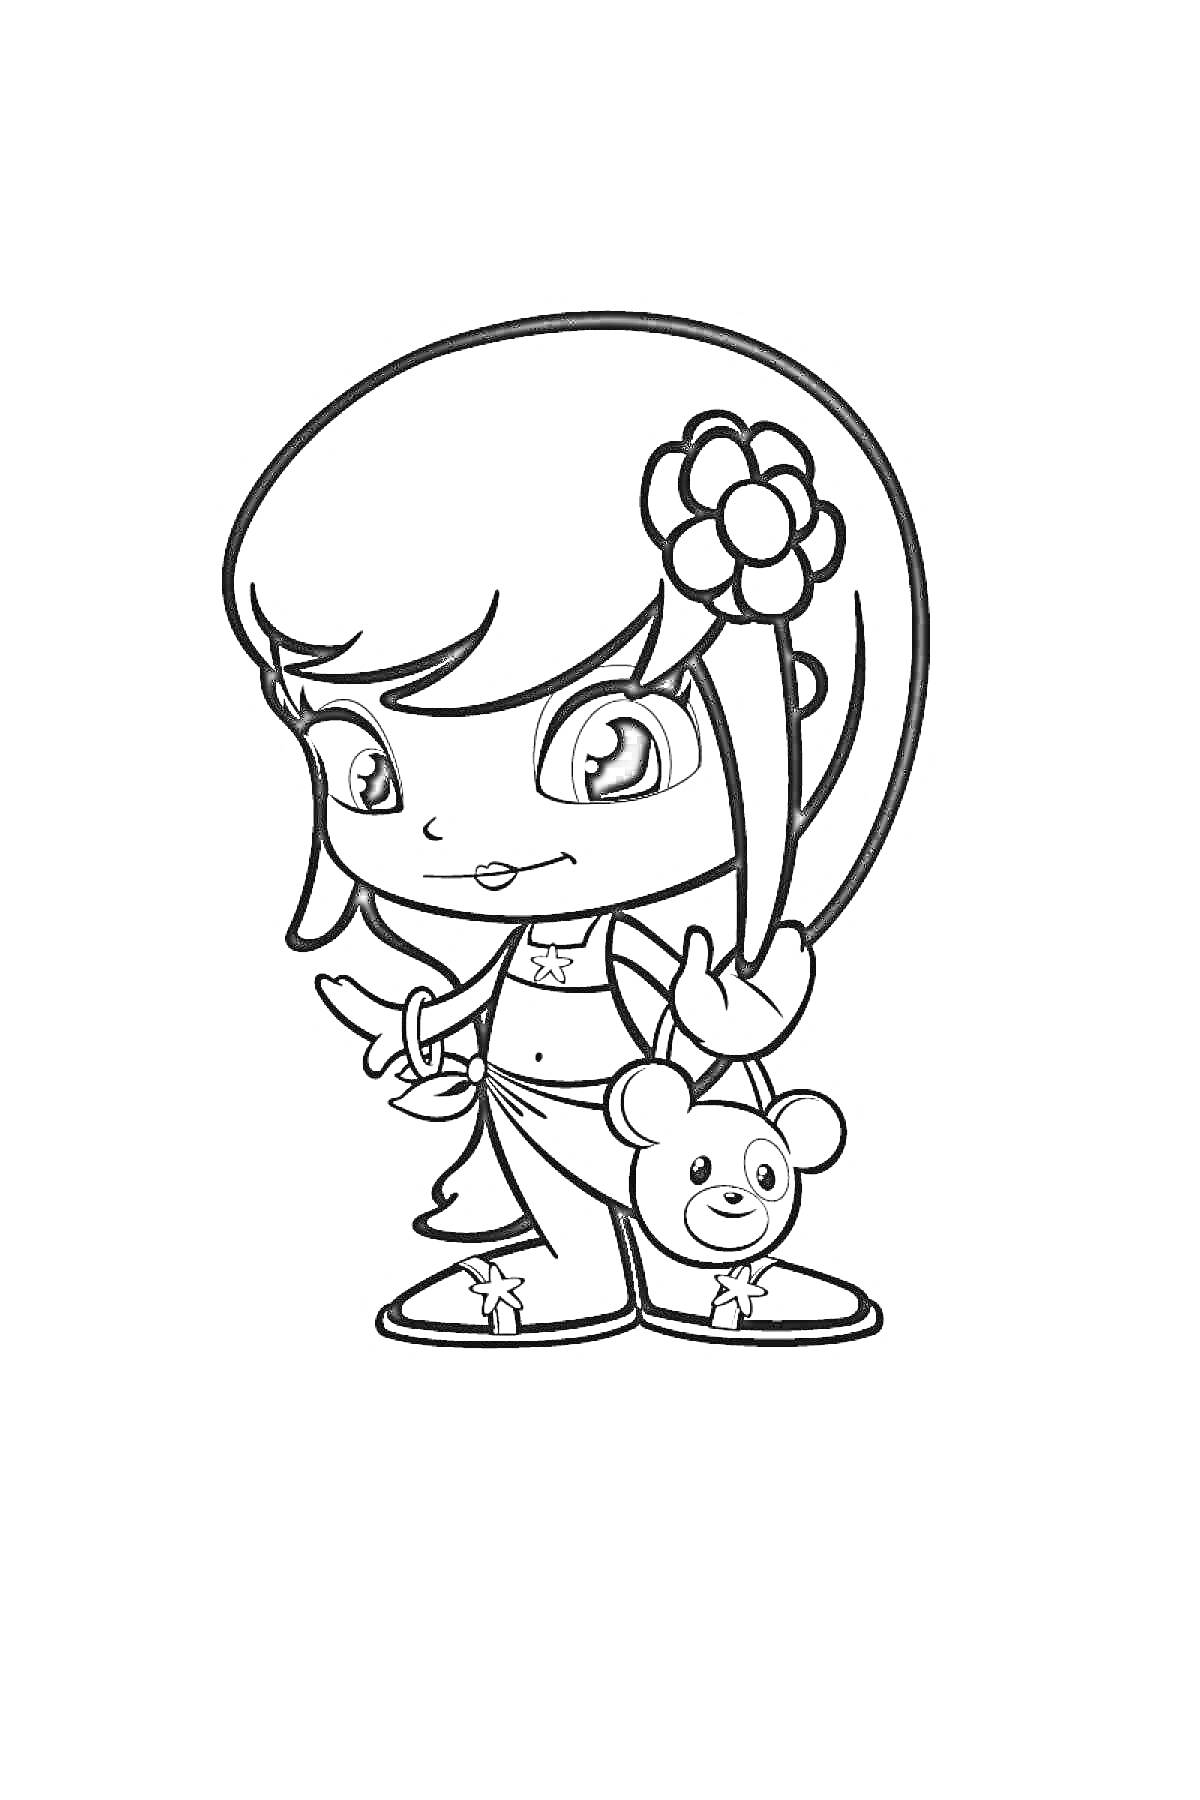 Раскраска Девочка Пинипон с цветком в волосах и плюшевым мишкой в руках